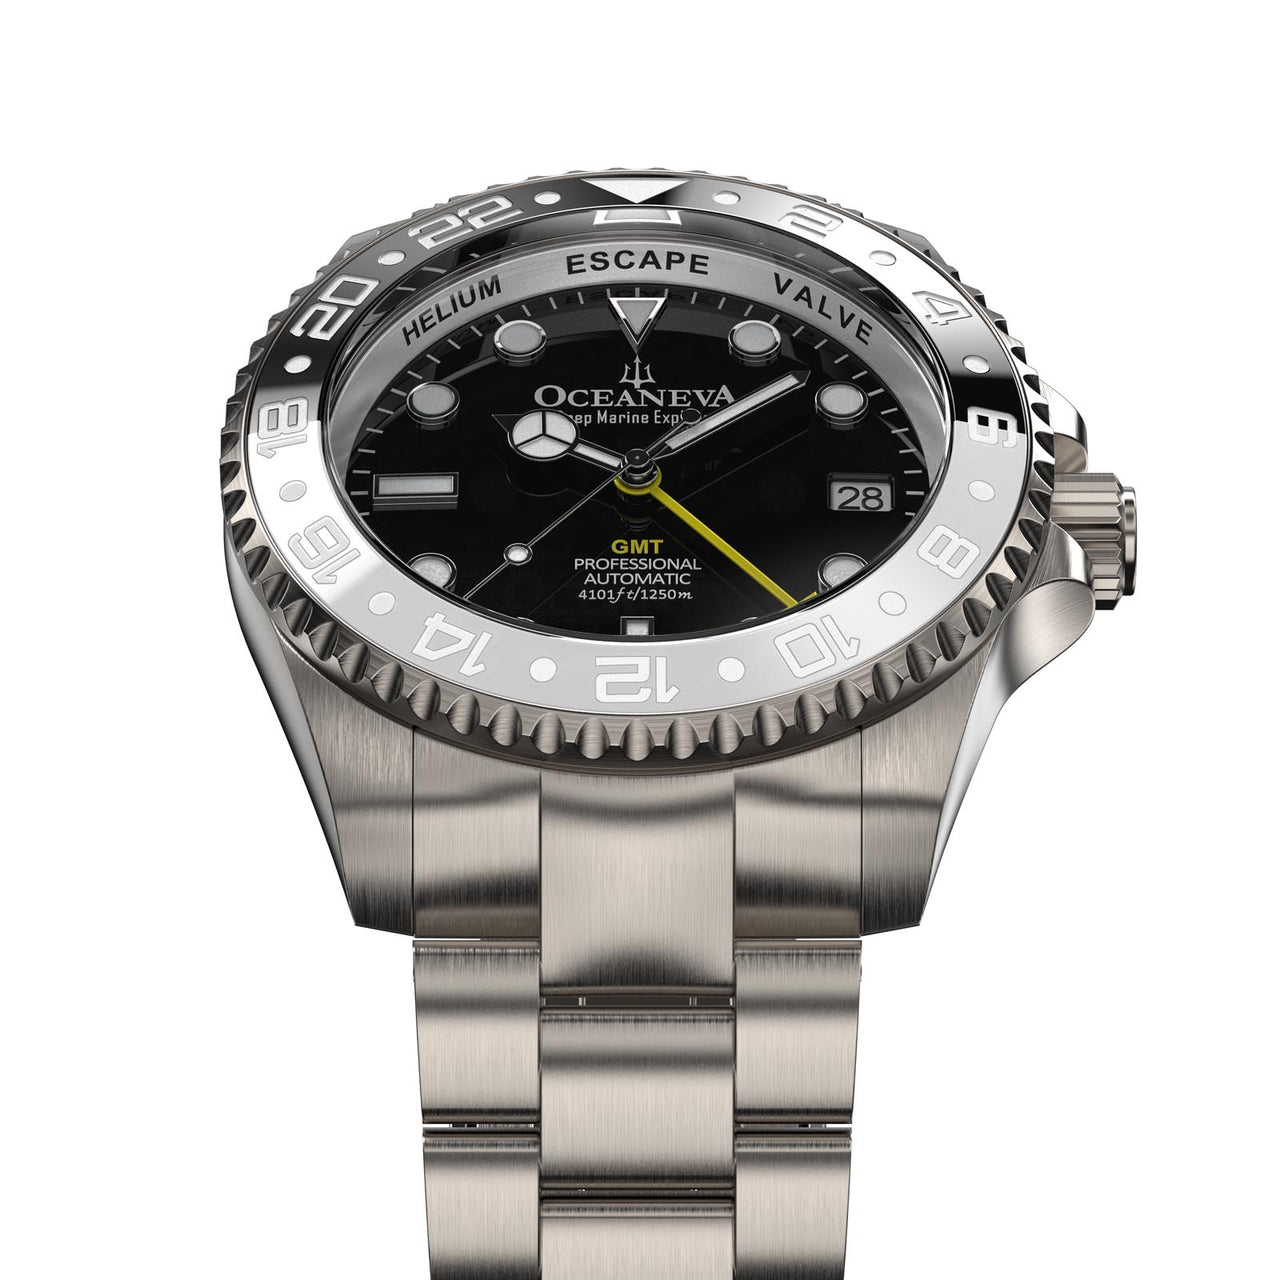 Seiko NH34 GMT automatic movement powering Oceaneva Titanium Timepiece